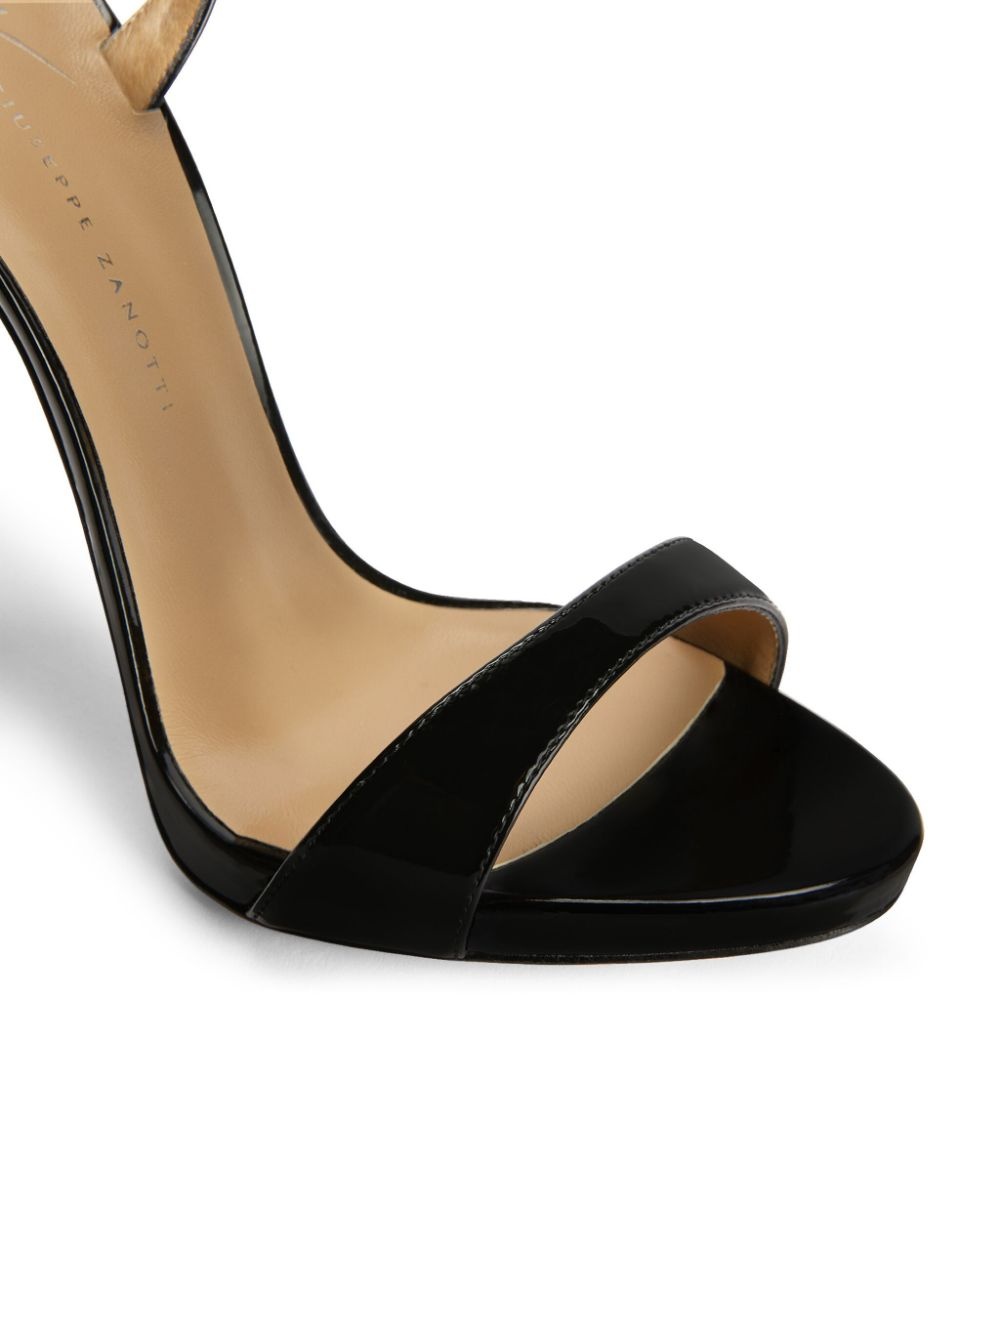 Gwyneth 120mm leather stiletto sandals - 4